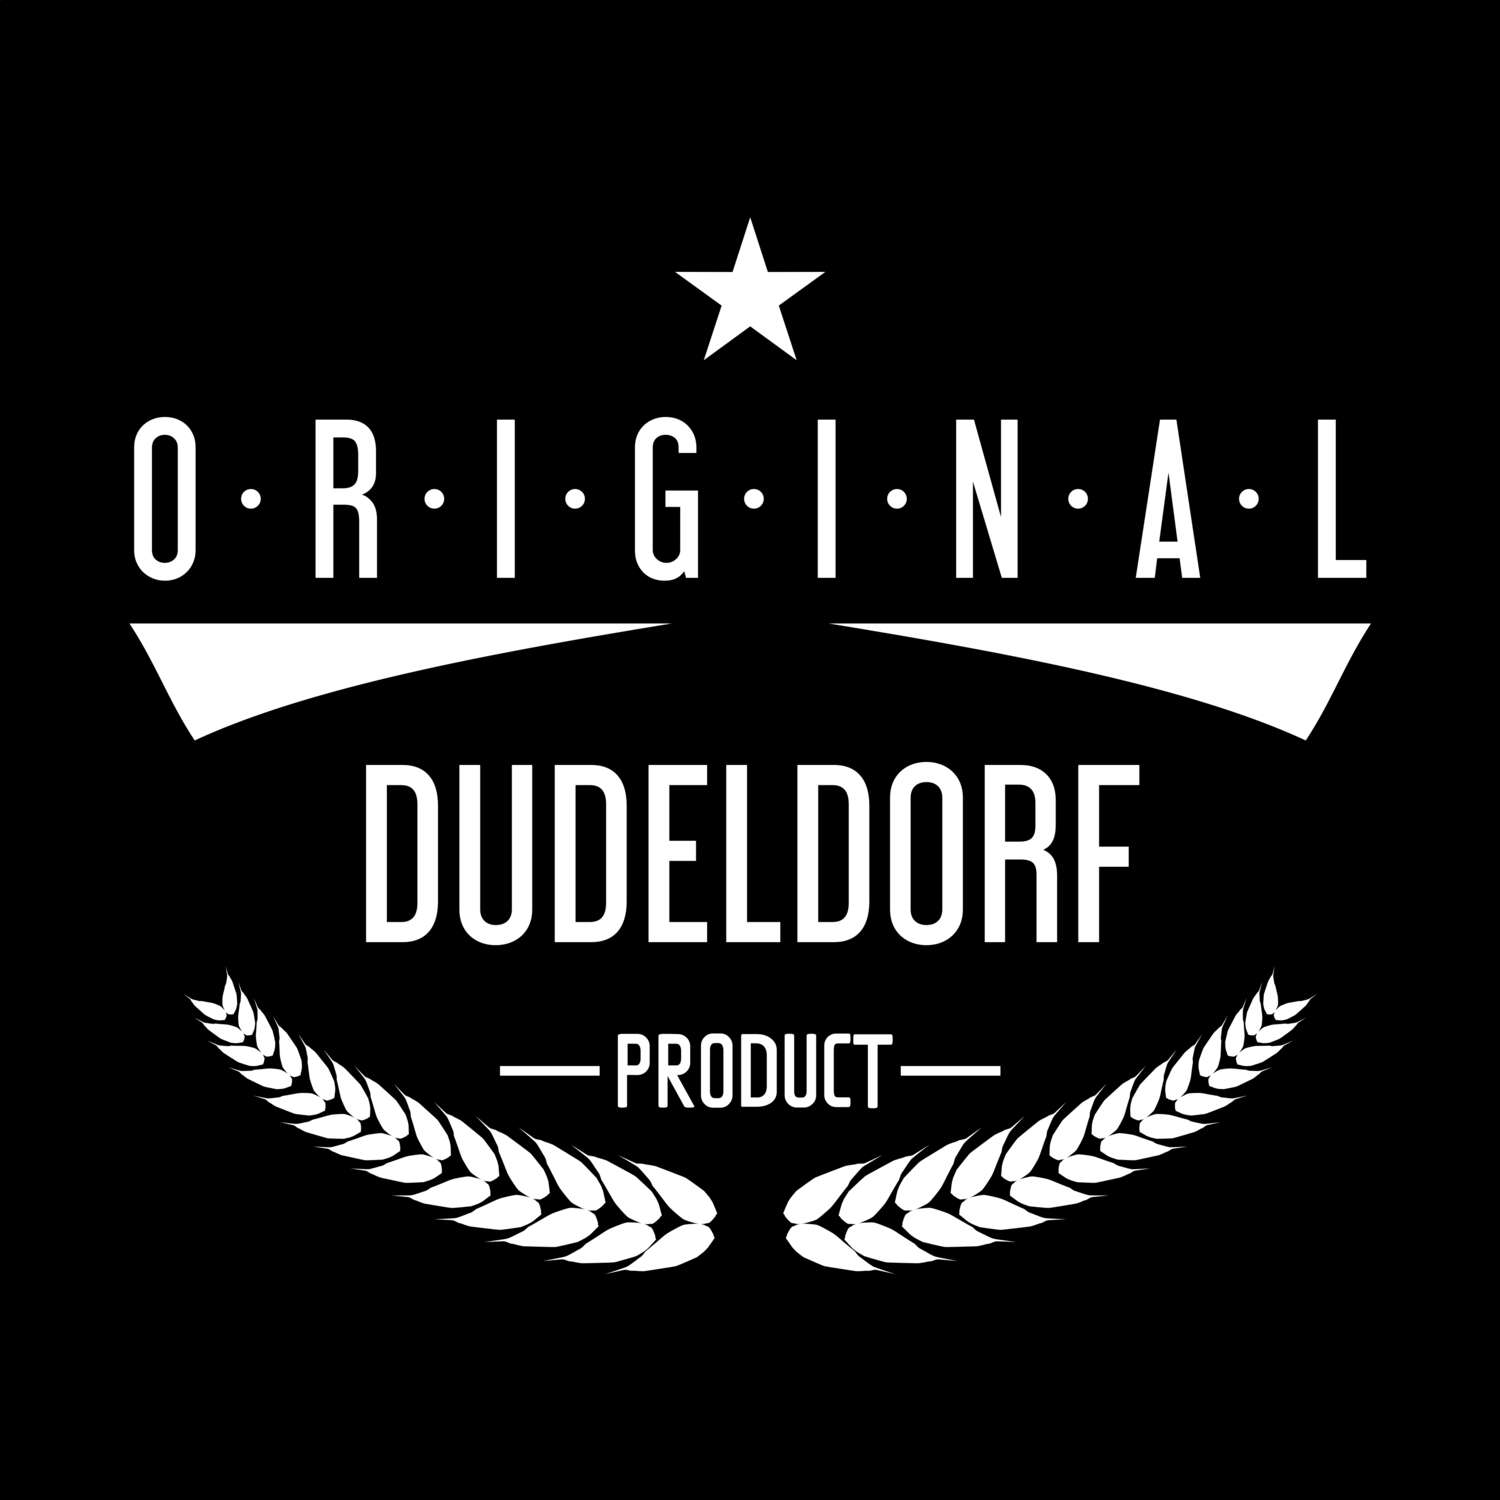 Dudeldorf T-Shirt »Original Product«